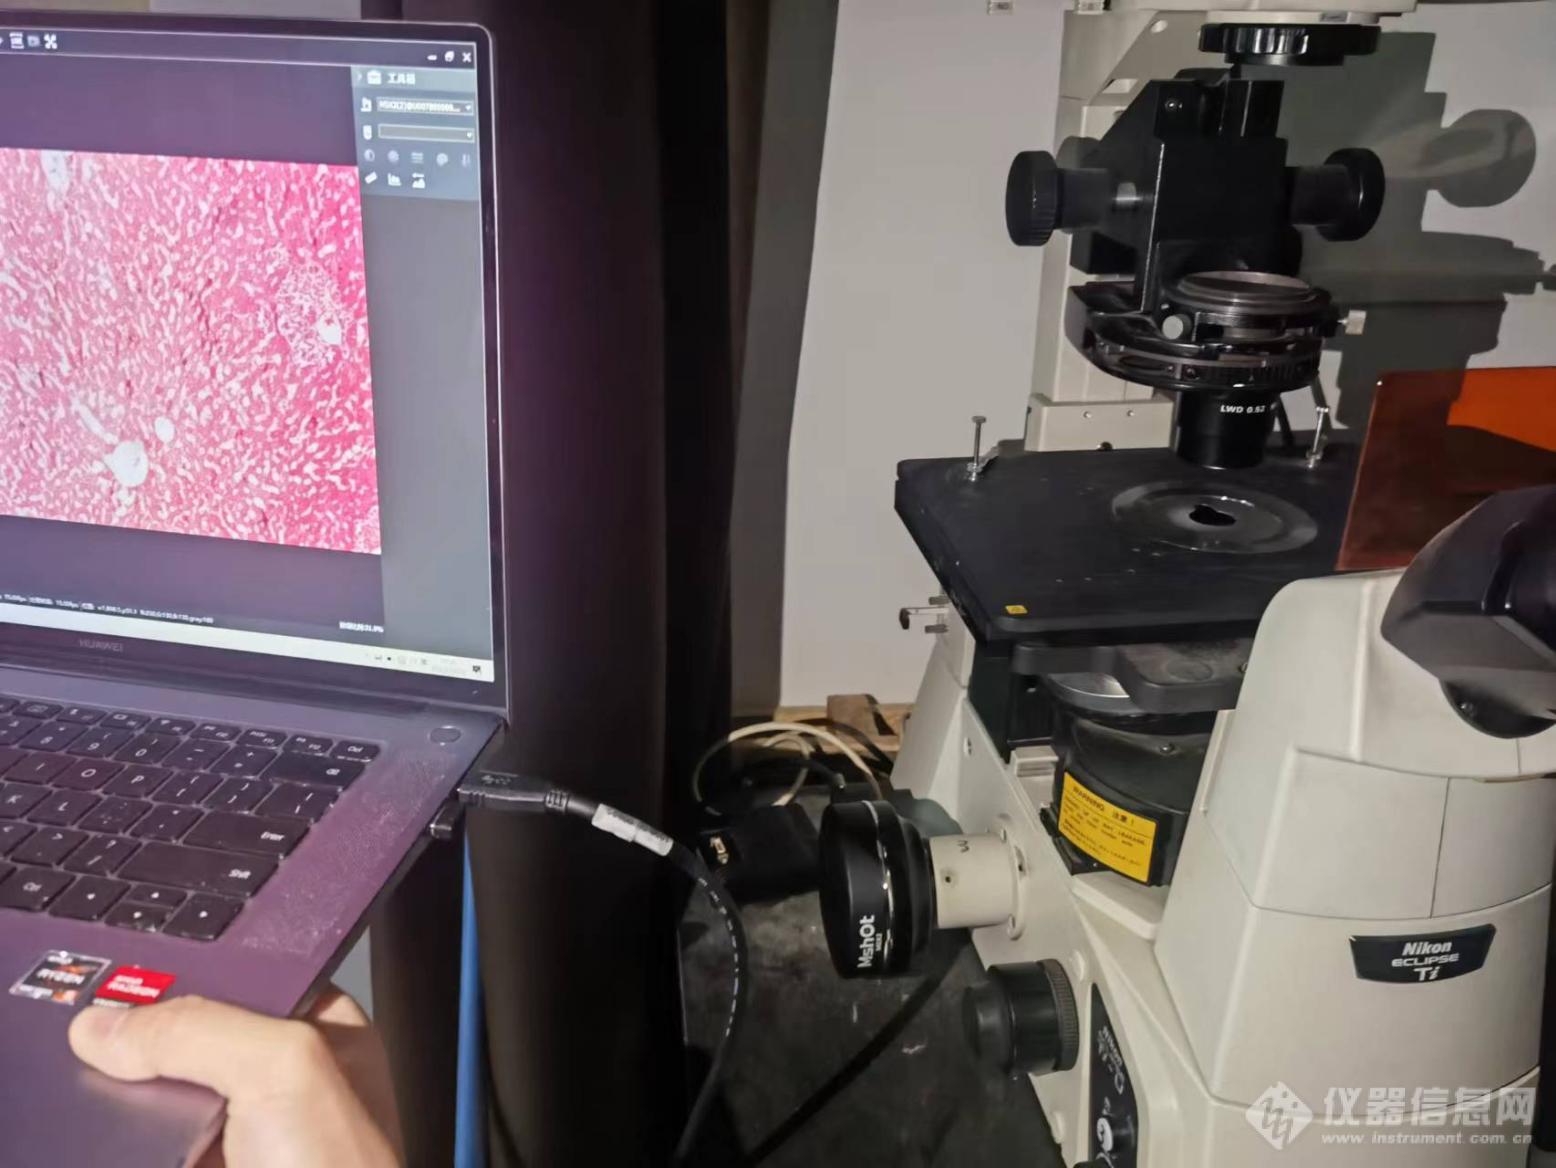 03_倒置荧光显微镜应用于鼠肝观察.jpg